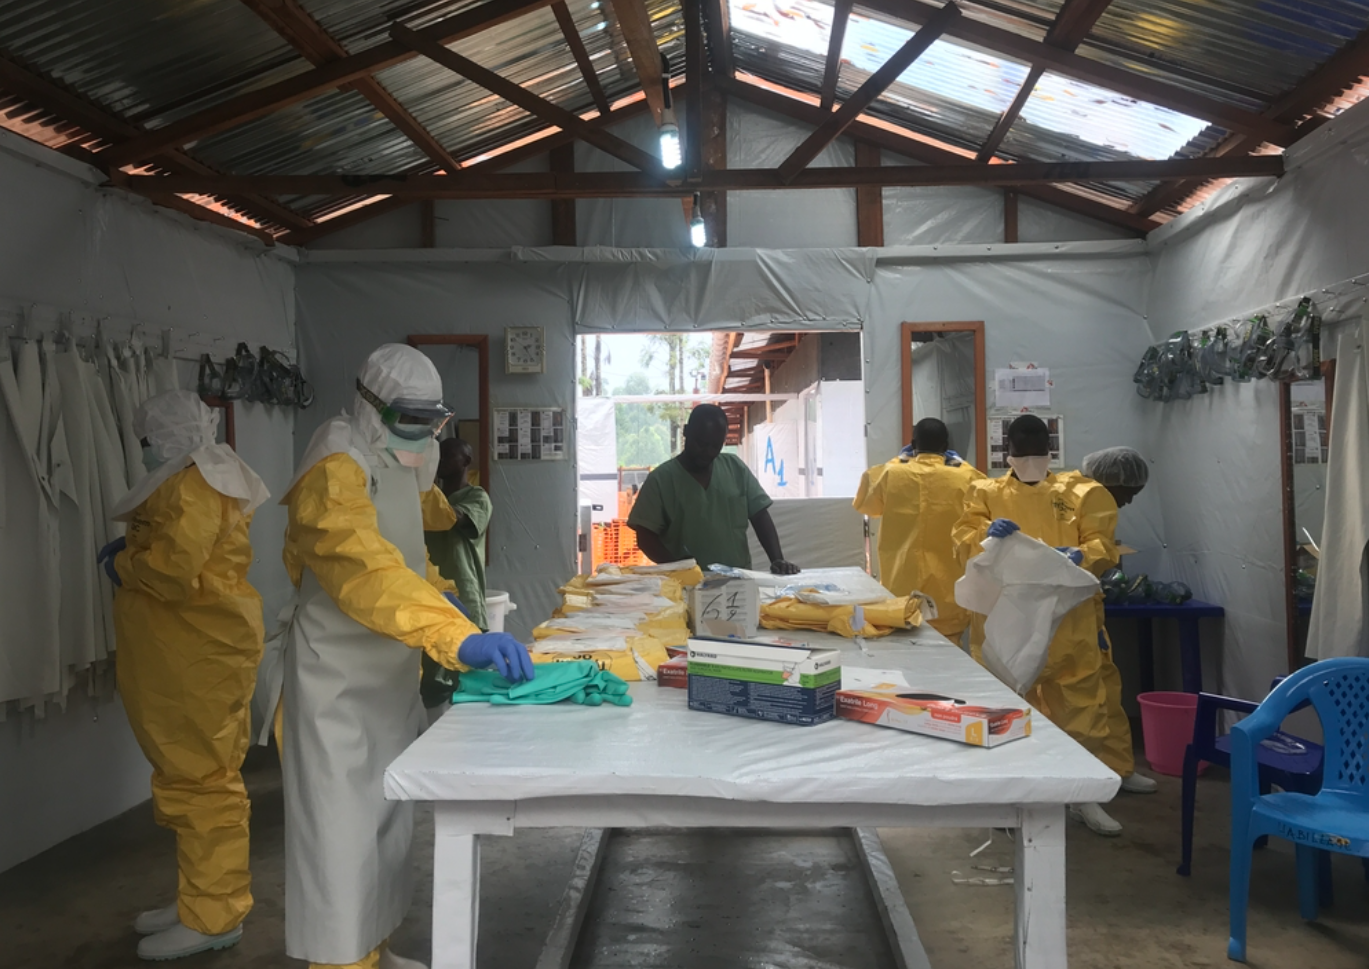 L’epidemia di ebola continua in Congo. MSF incrementa gli interventi a sostegno dei malati (di C. Chiale, G. Fenoglio, L. Iemina, R. Giergji, S. Zemiti)